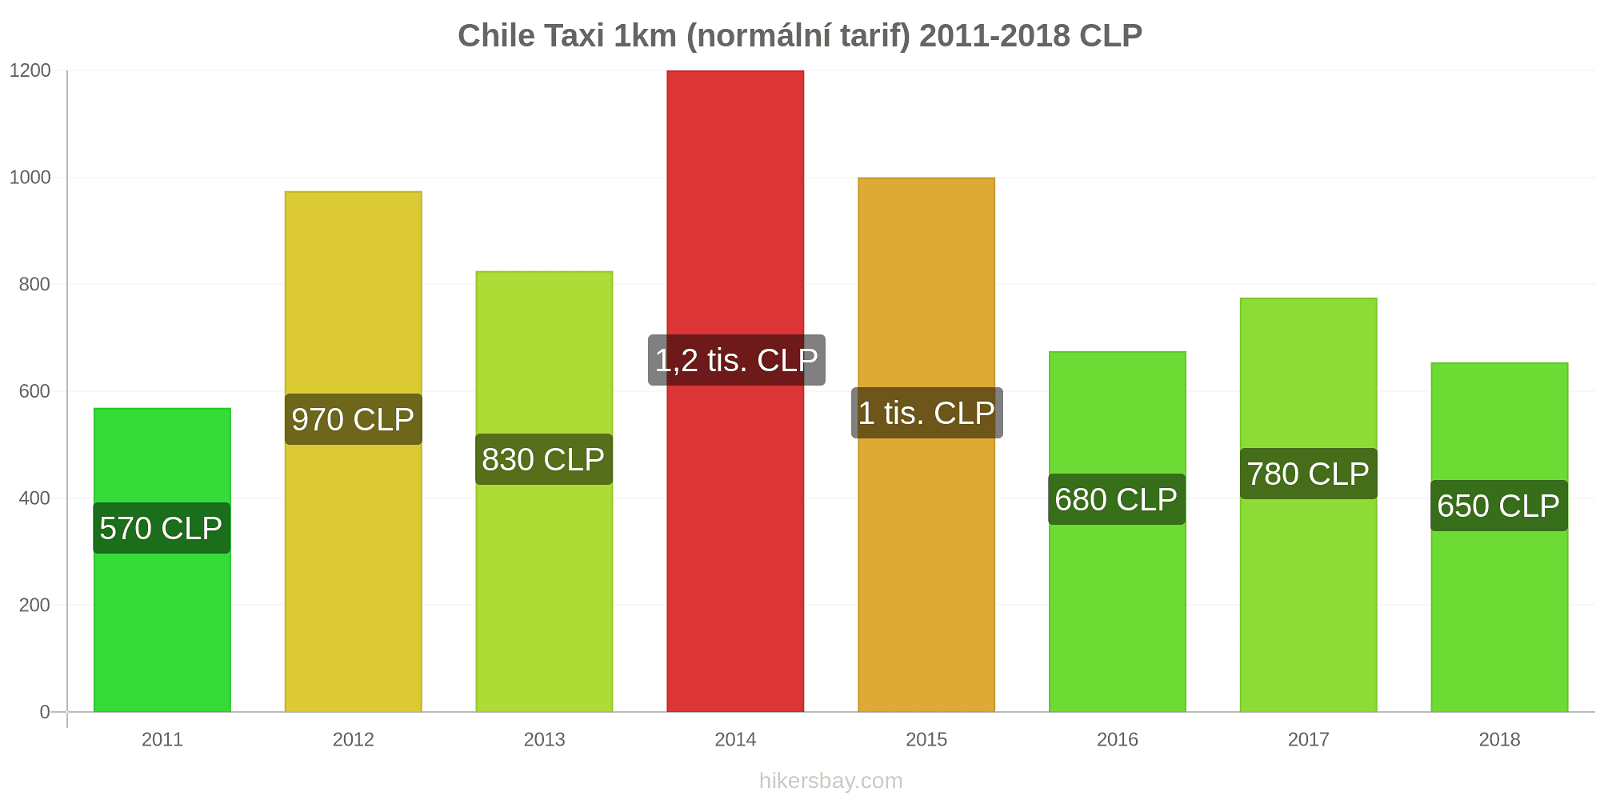 Chile změny cen Taxi 1km (normální tarif) hikersbay.com